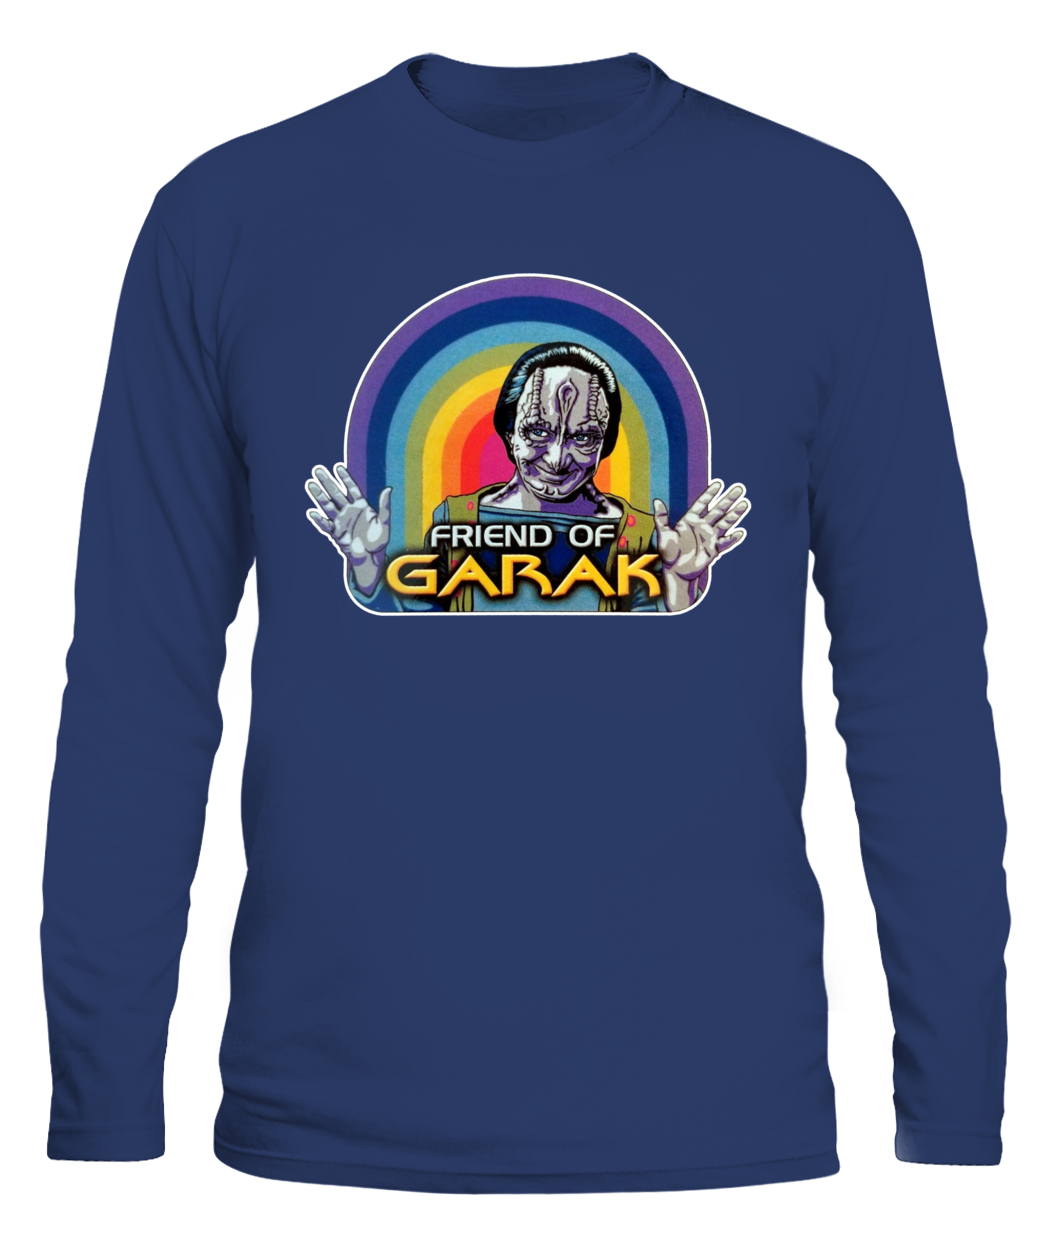 Friend Of Garak Shirt Star trek Shirt